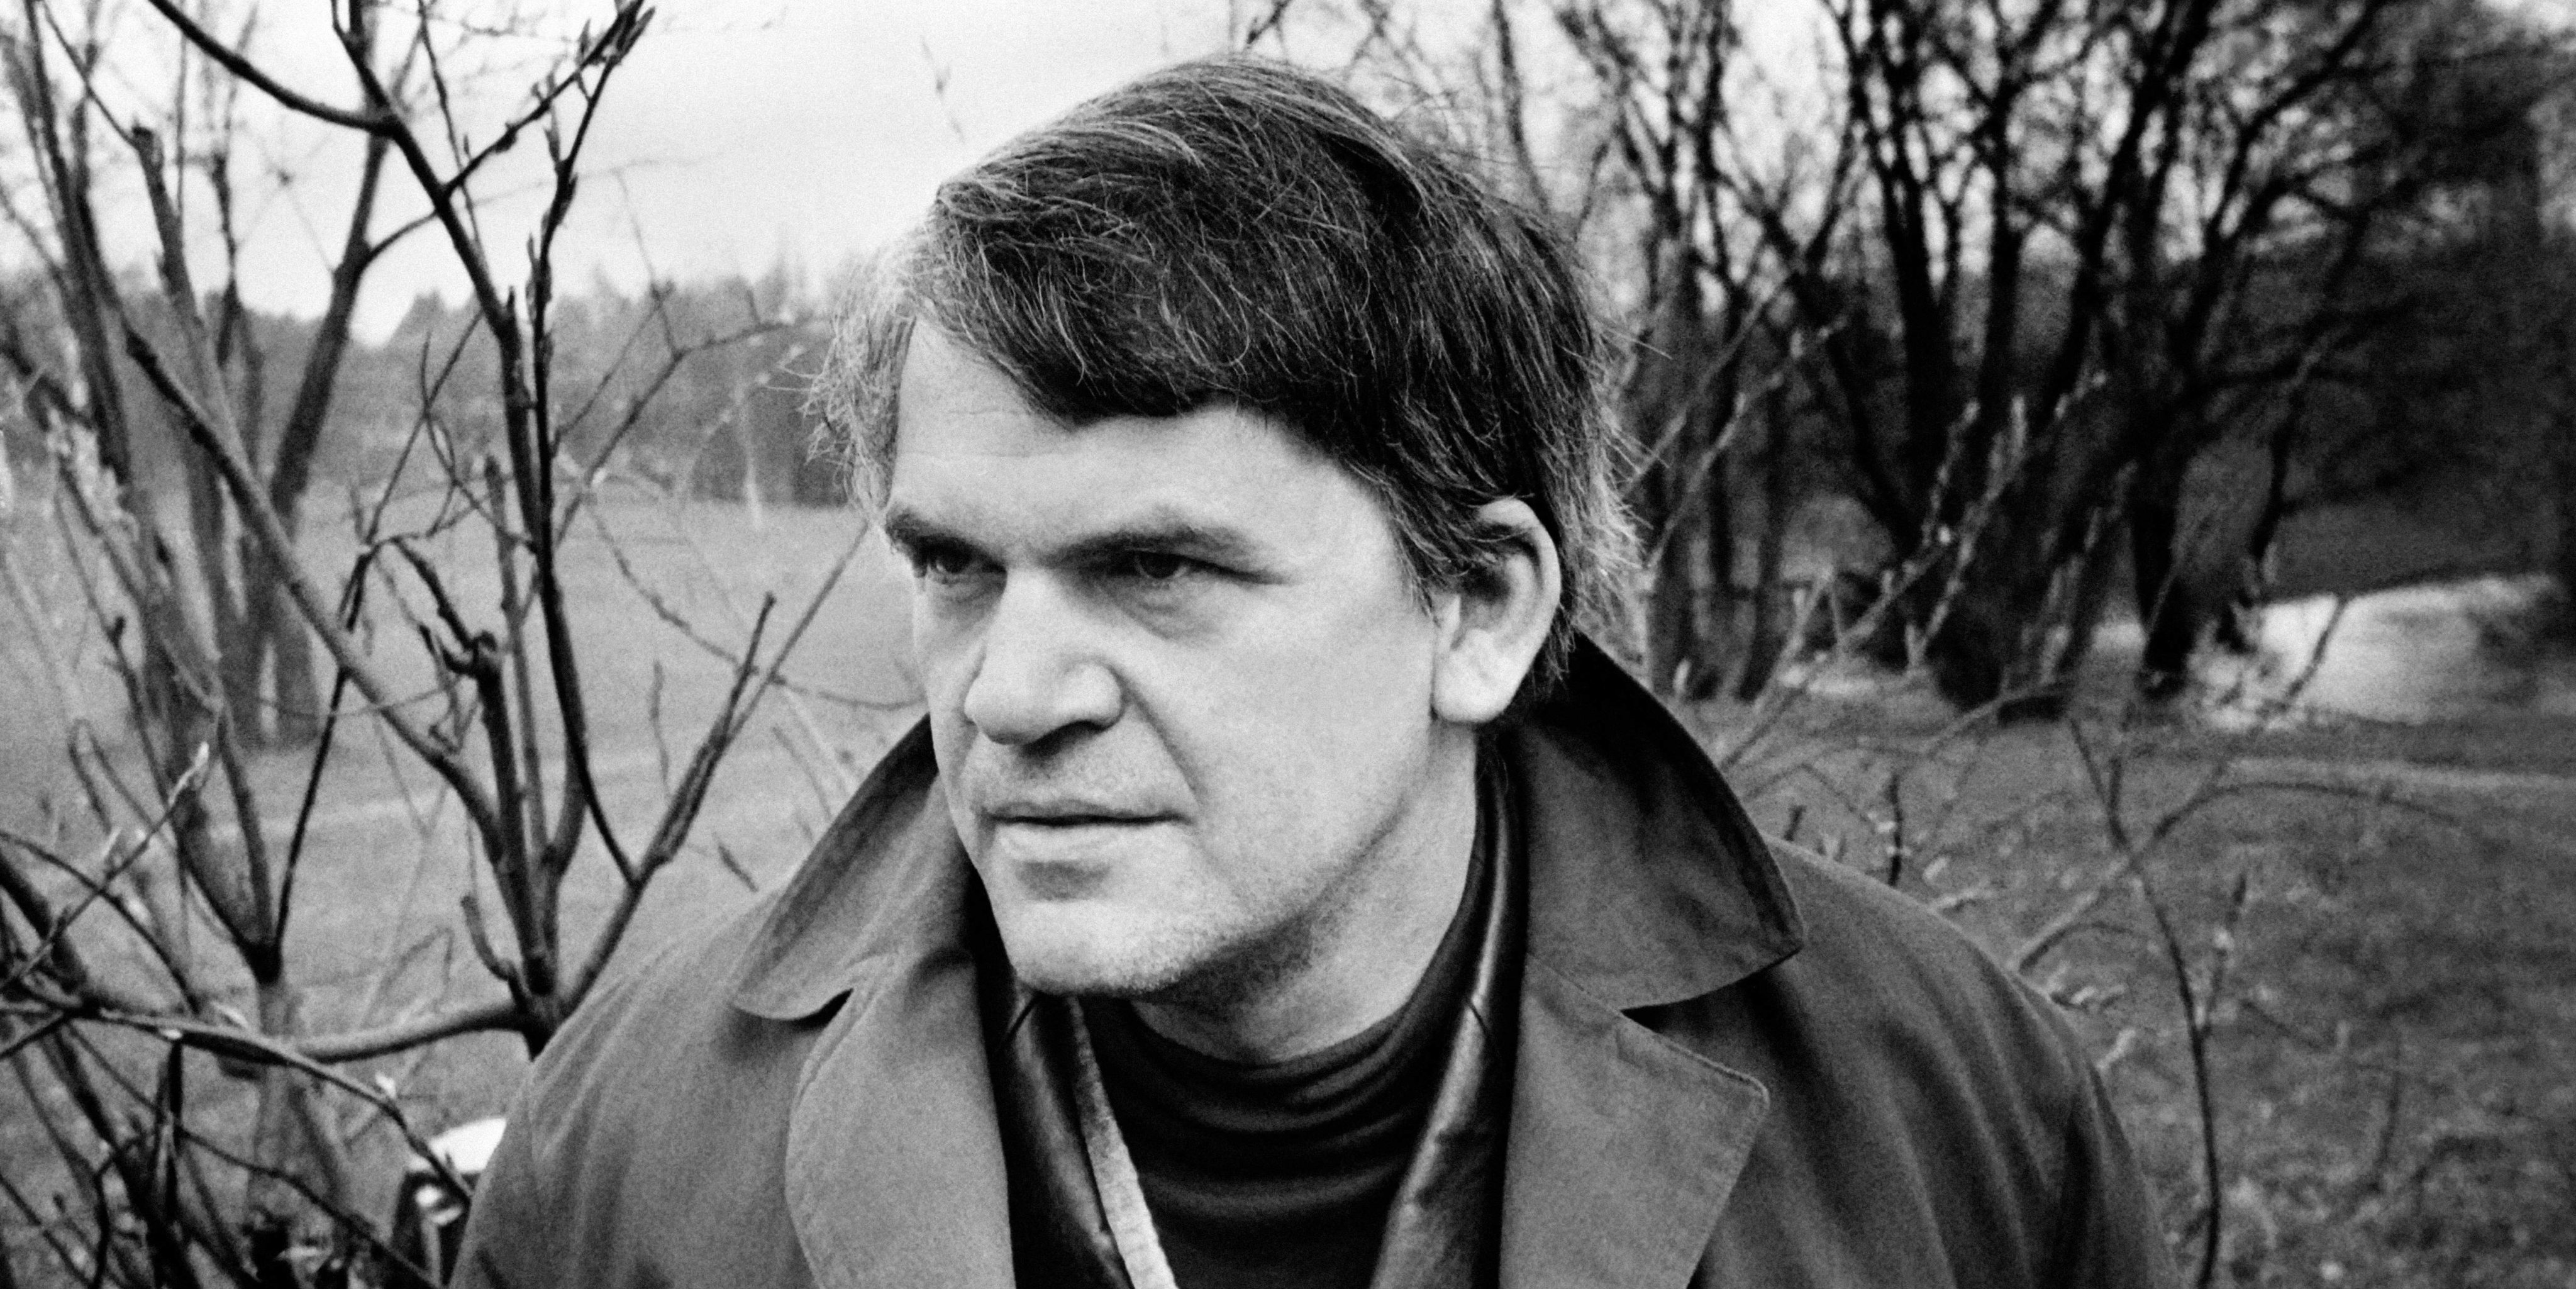 Milan Kundera (1929-2023) o narrador da inquietação imagem